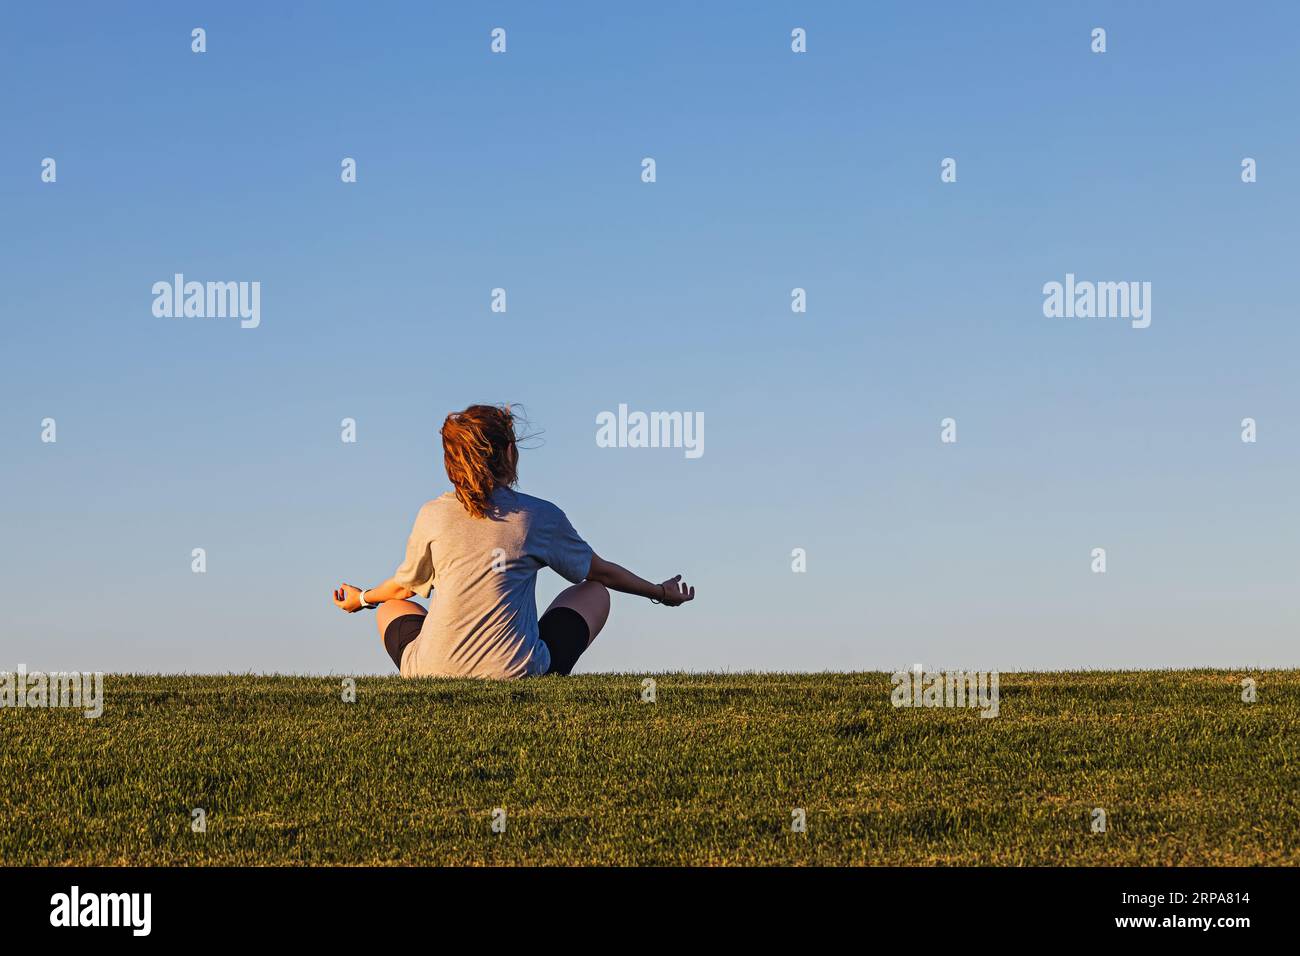 Femme assise dans la pose de lotus sur l'herbe verte au-dessus du ciel bleu, se connectant avec le concept de la nature Banque D'Images